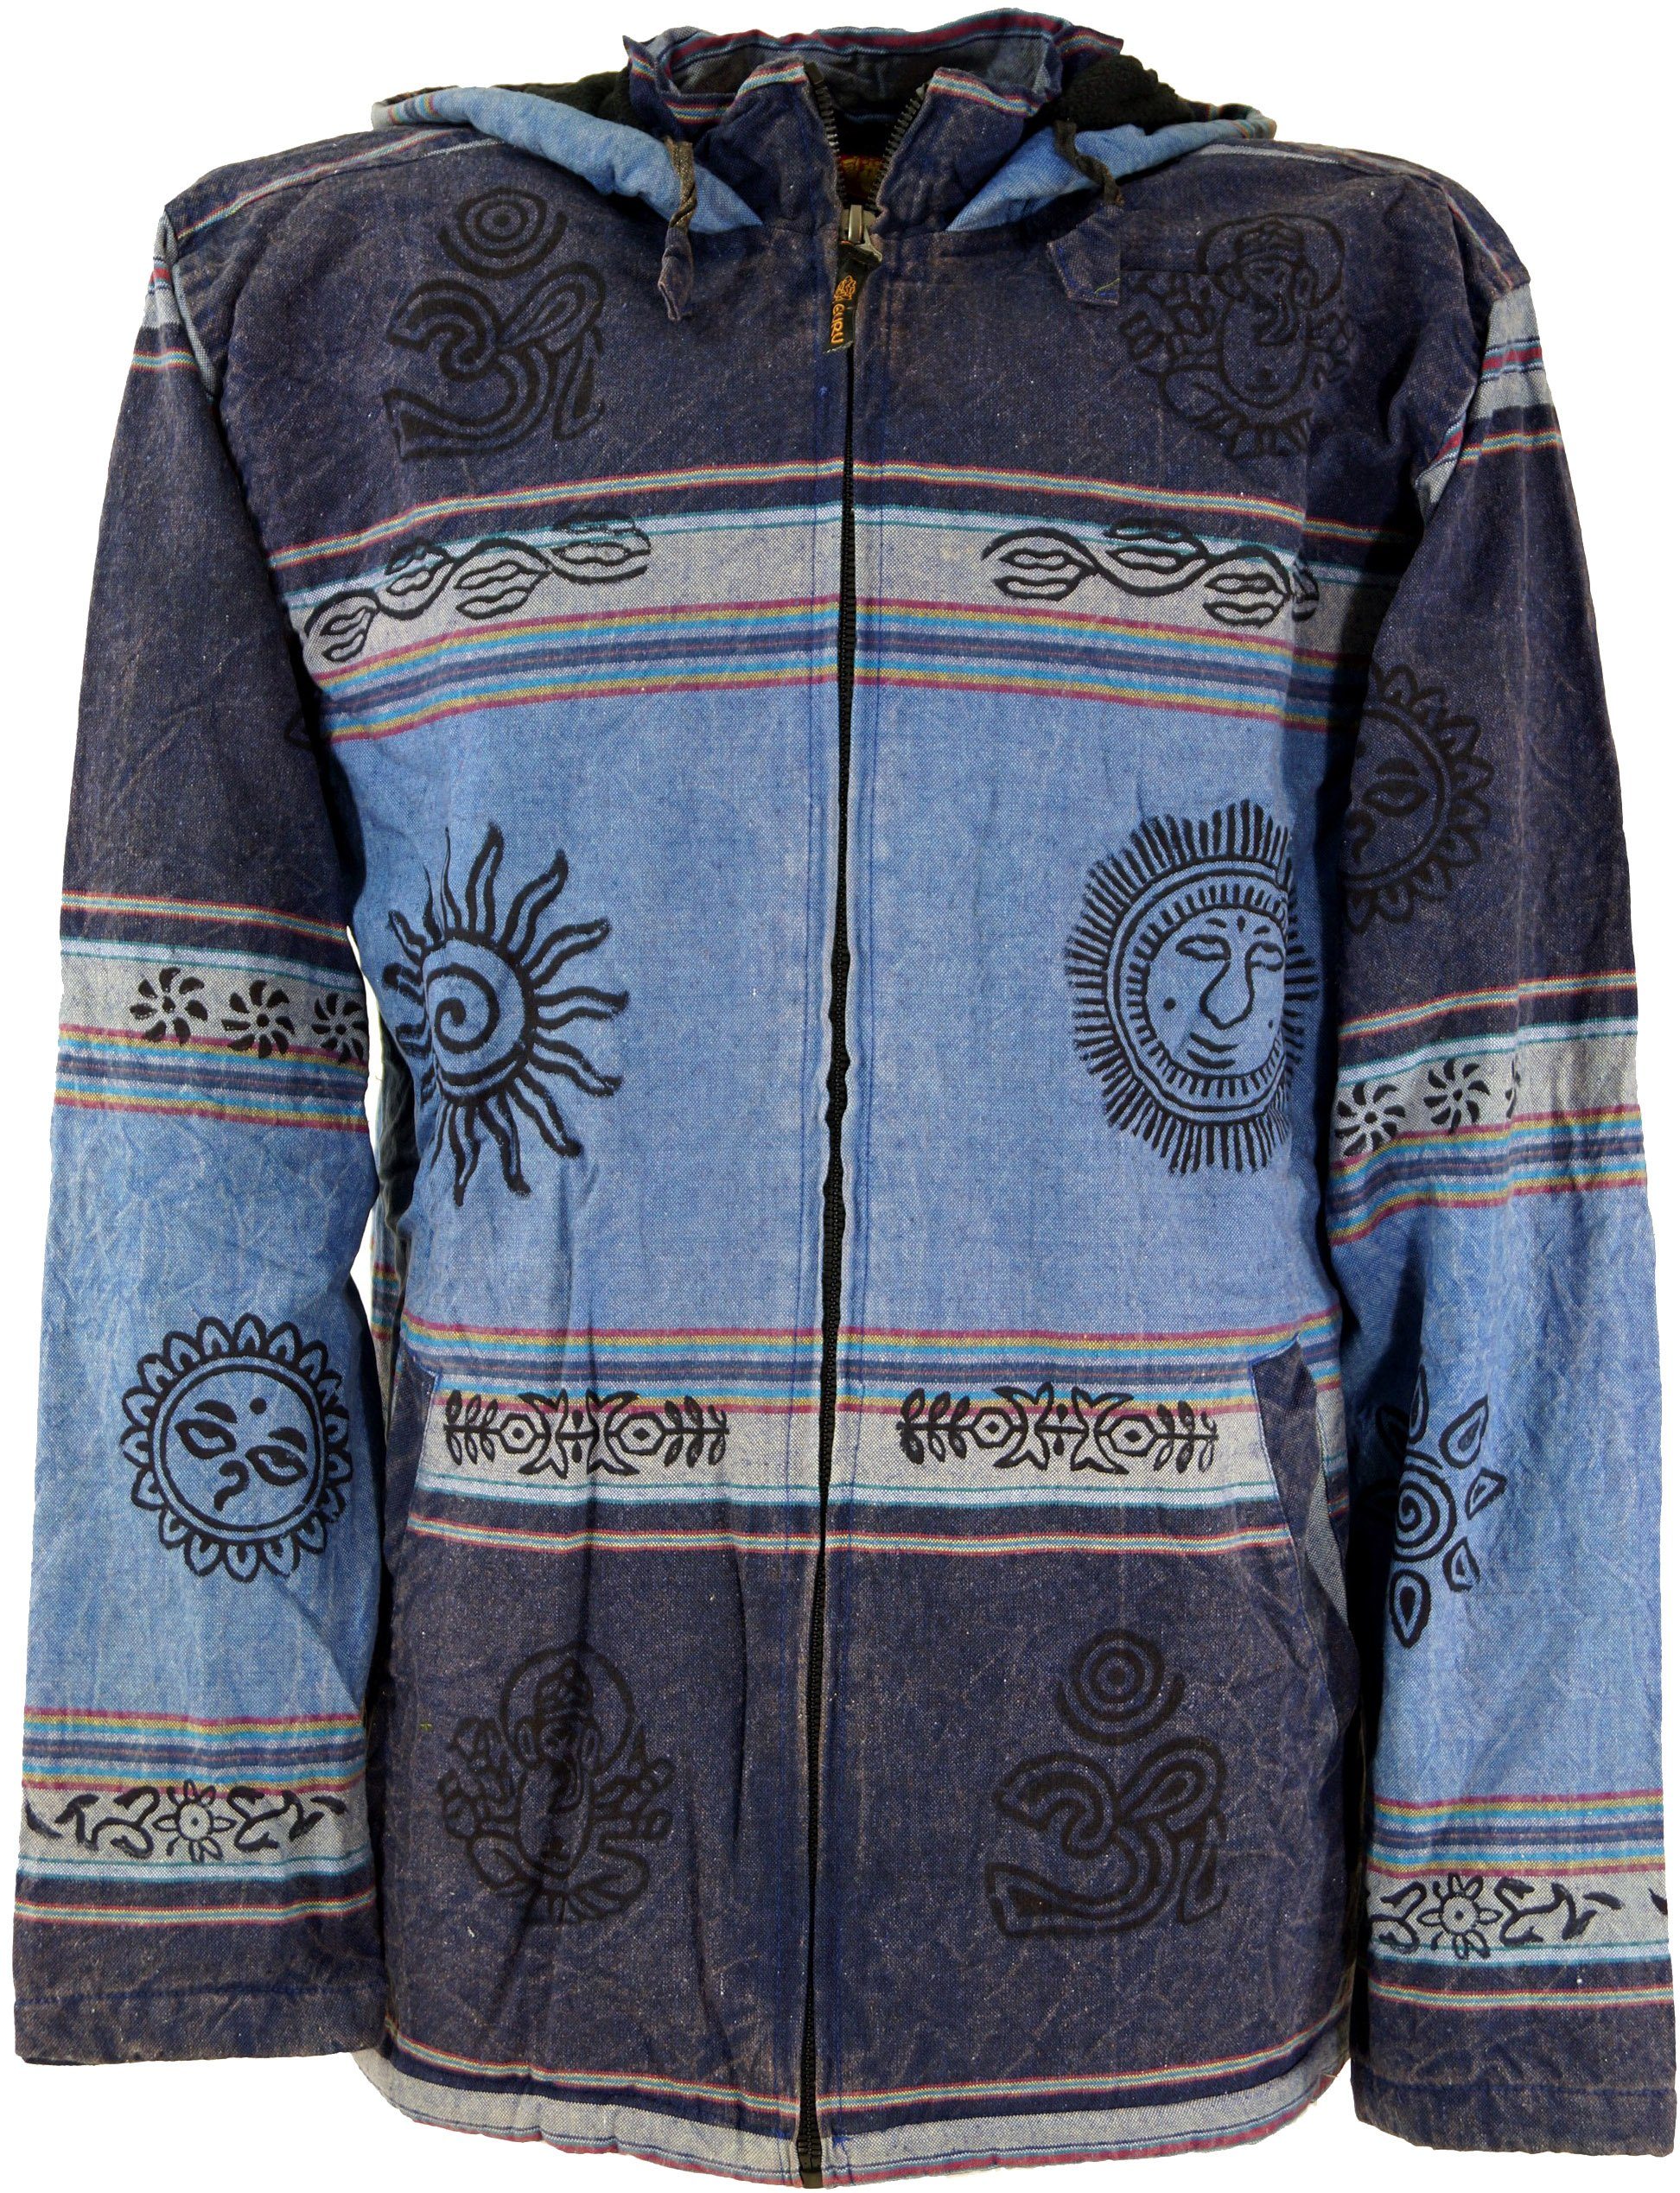 - Strickjacke Jacke alternative Guru-Shop Ethno blau Jacke, Bekleidung Kapuzen Goa